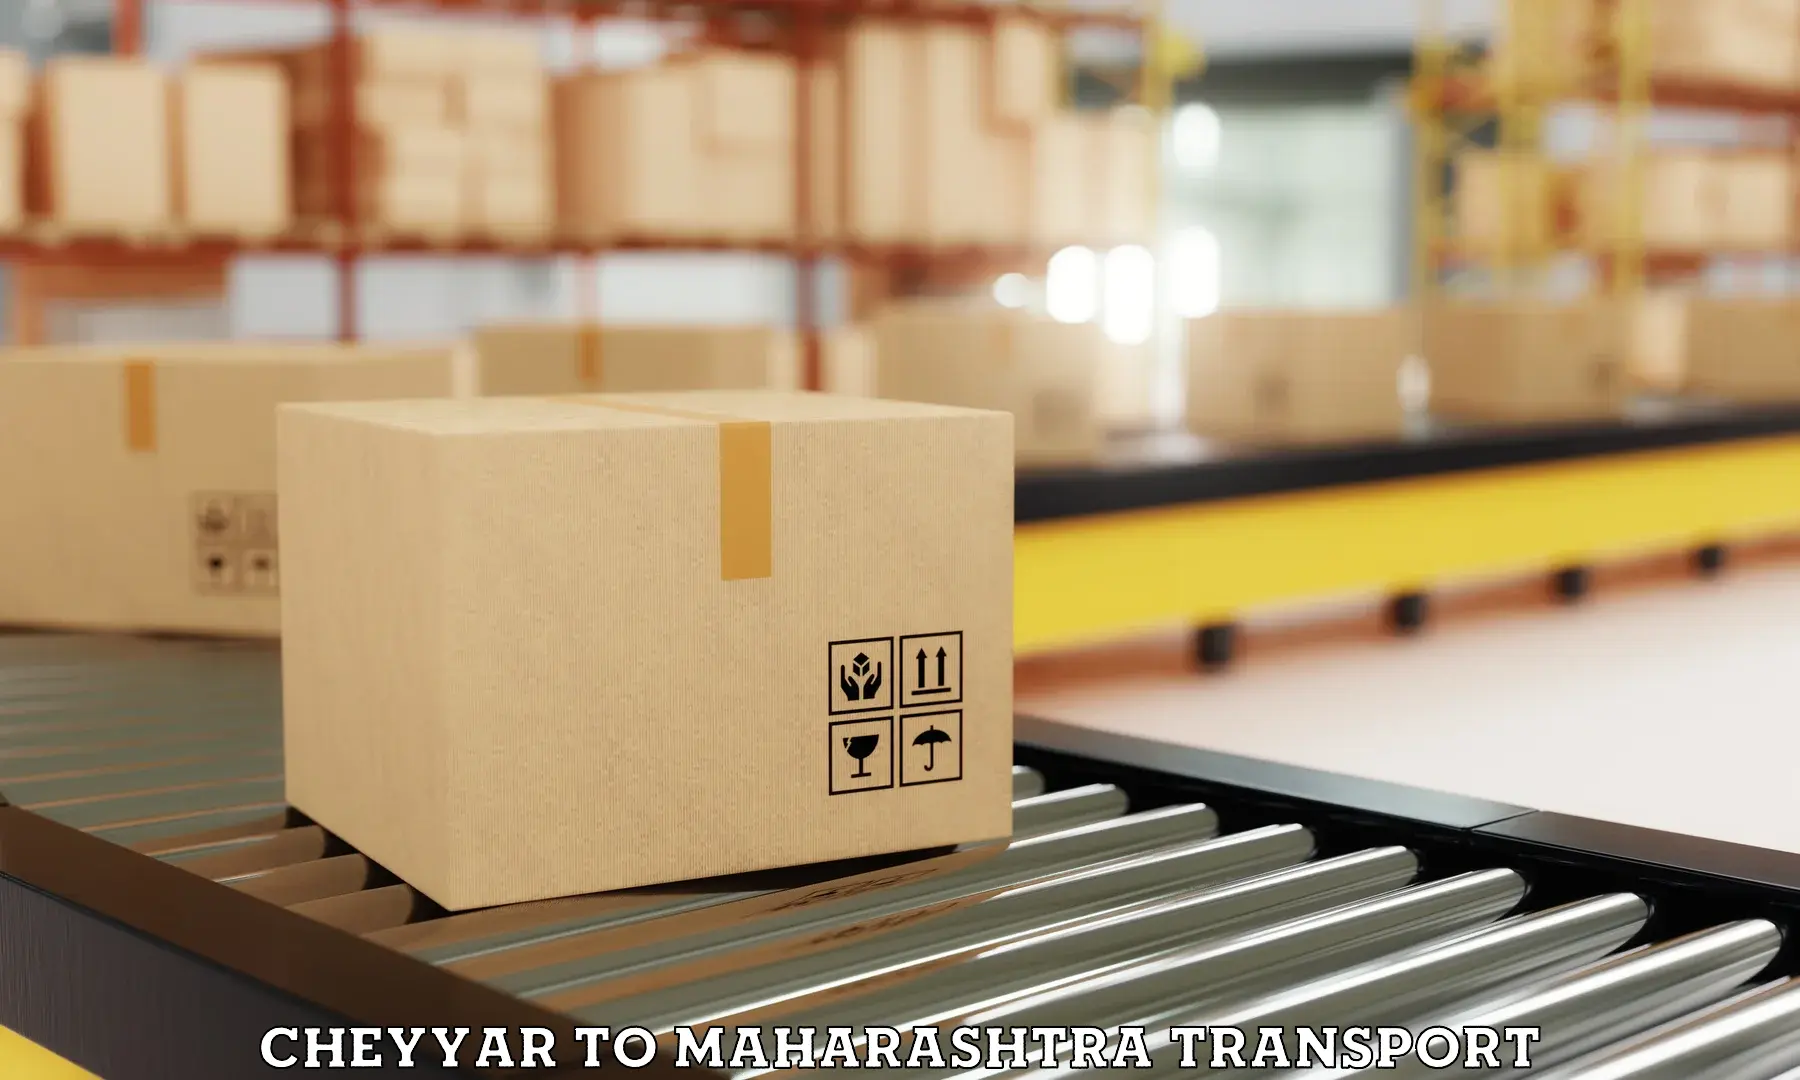 Delivery service Cheyyar to Maharashtra